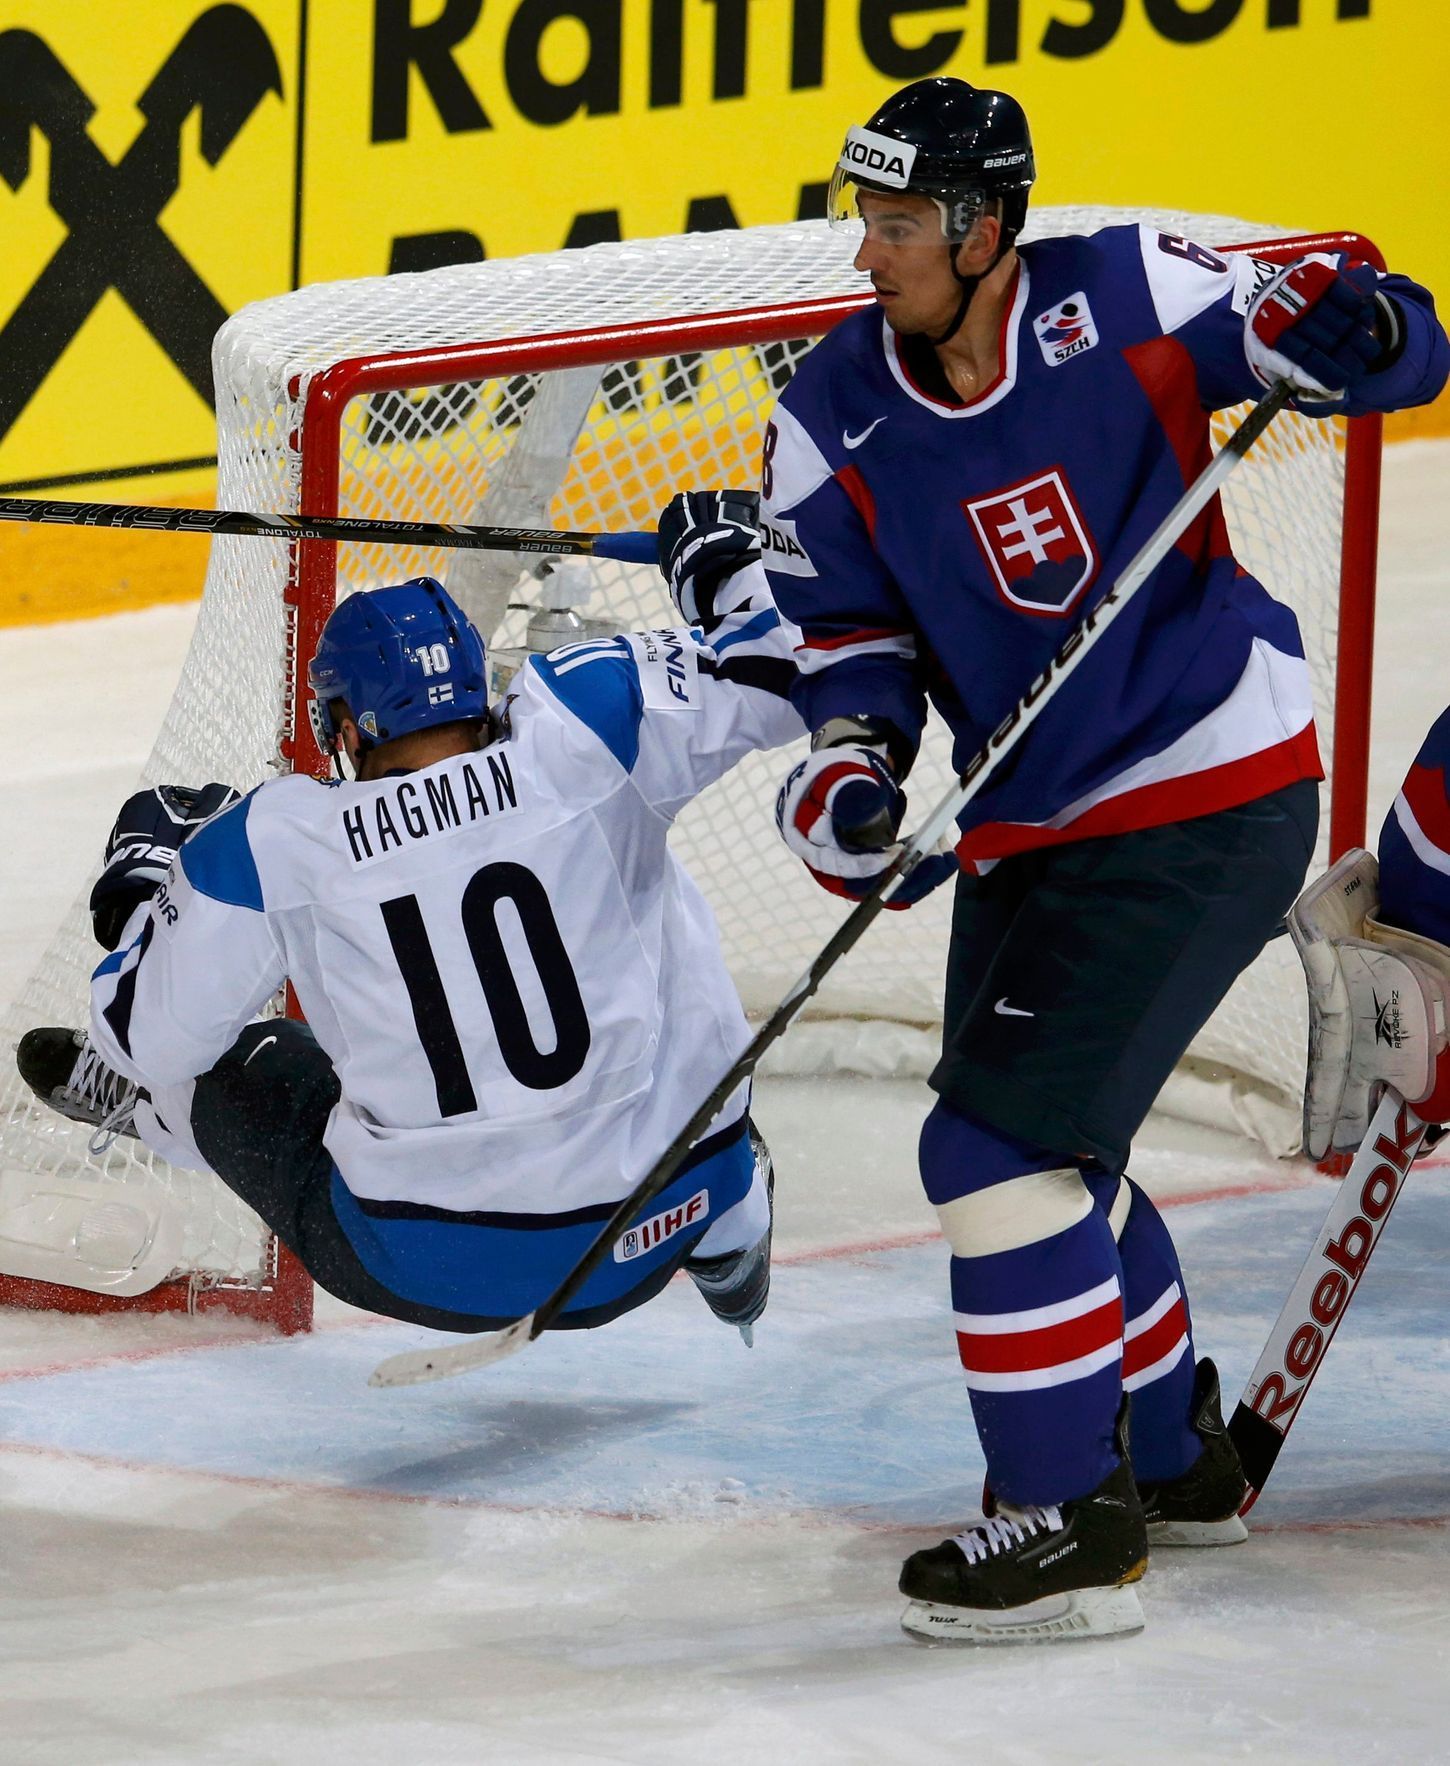 MS v hokeji 2013, Finsko - Slovensko: Niklas Hagman - Milan Jurčina